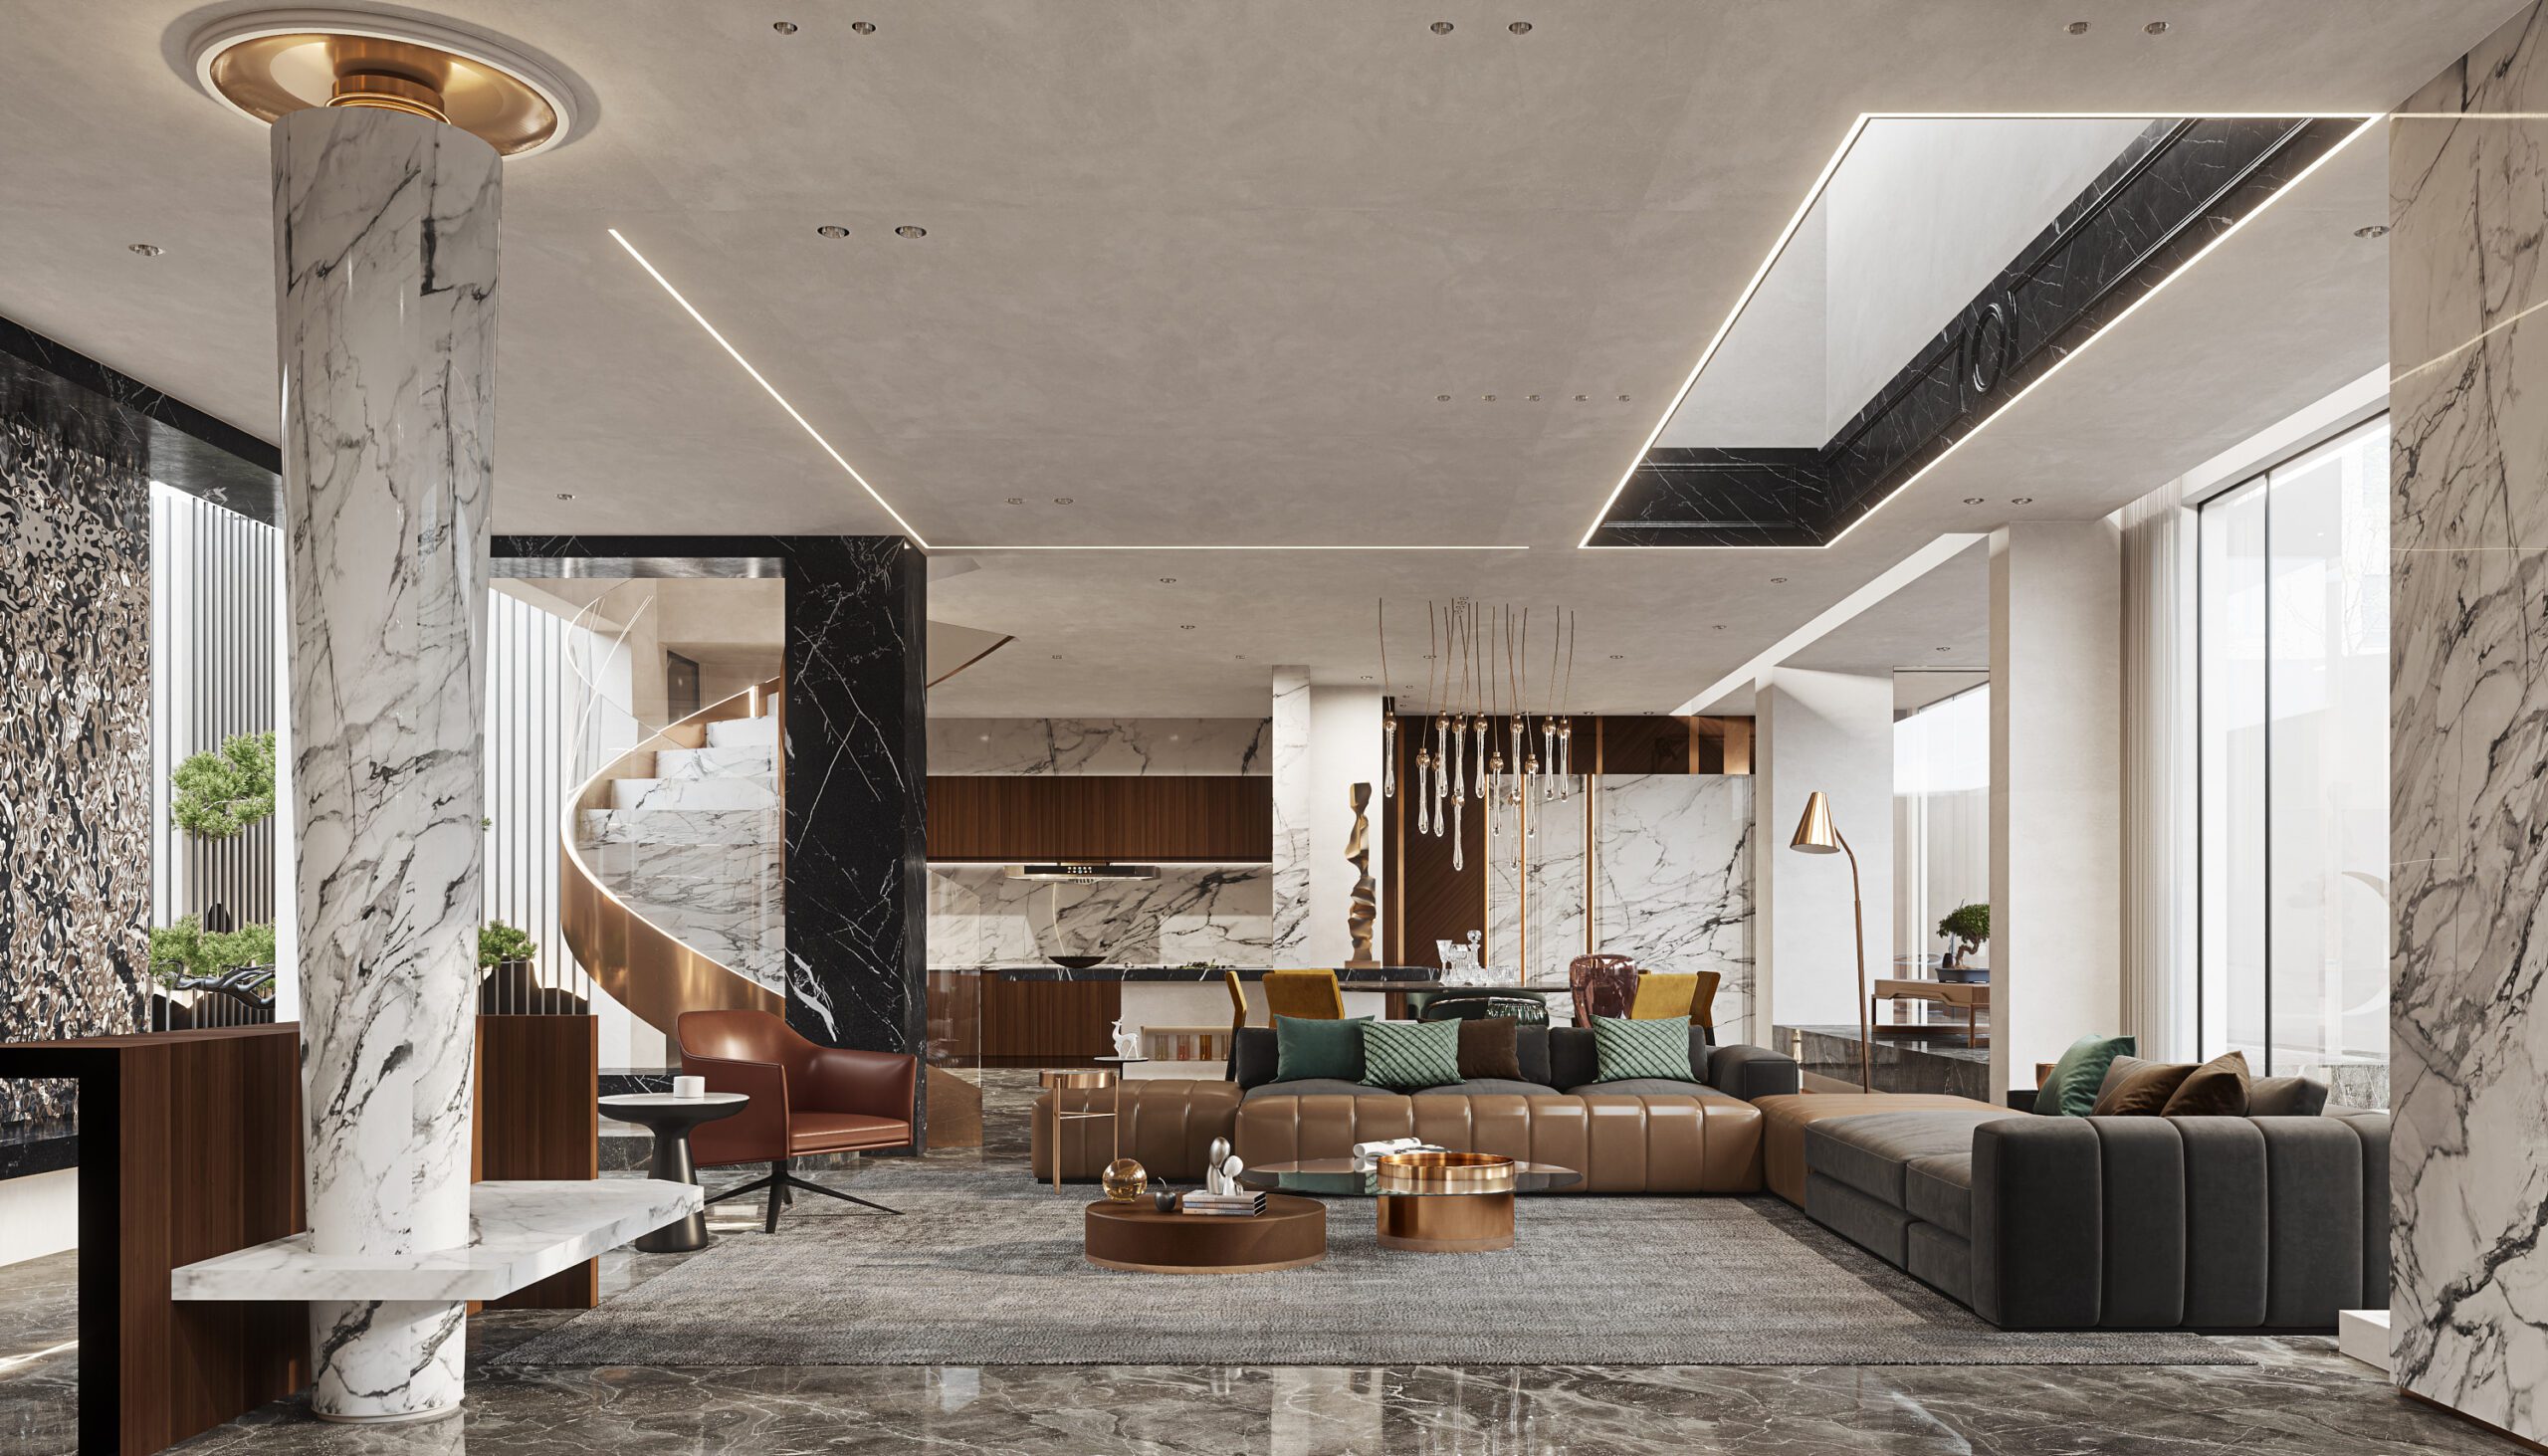 豪宅客廳設計中融入豐富的元素與天然木色調、白色大理石和灰色家具混合在一起，營造出一種自然溫馨的環境